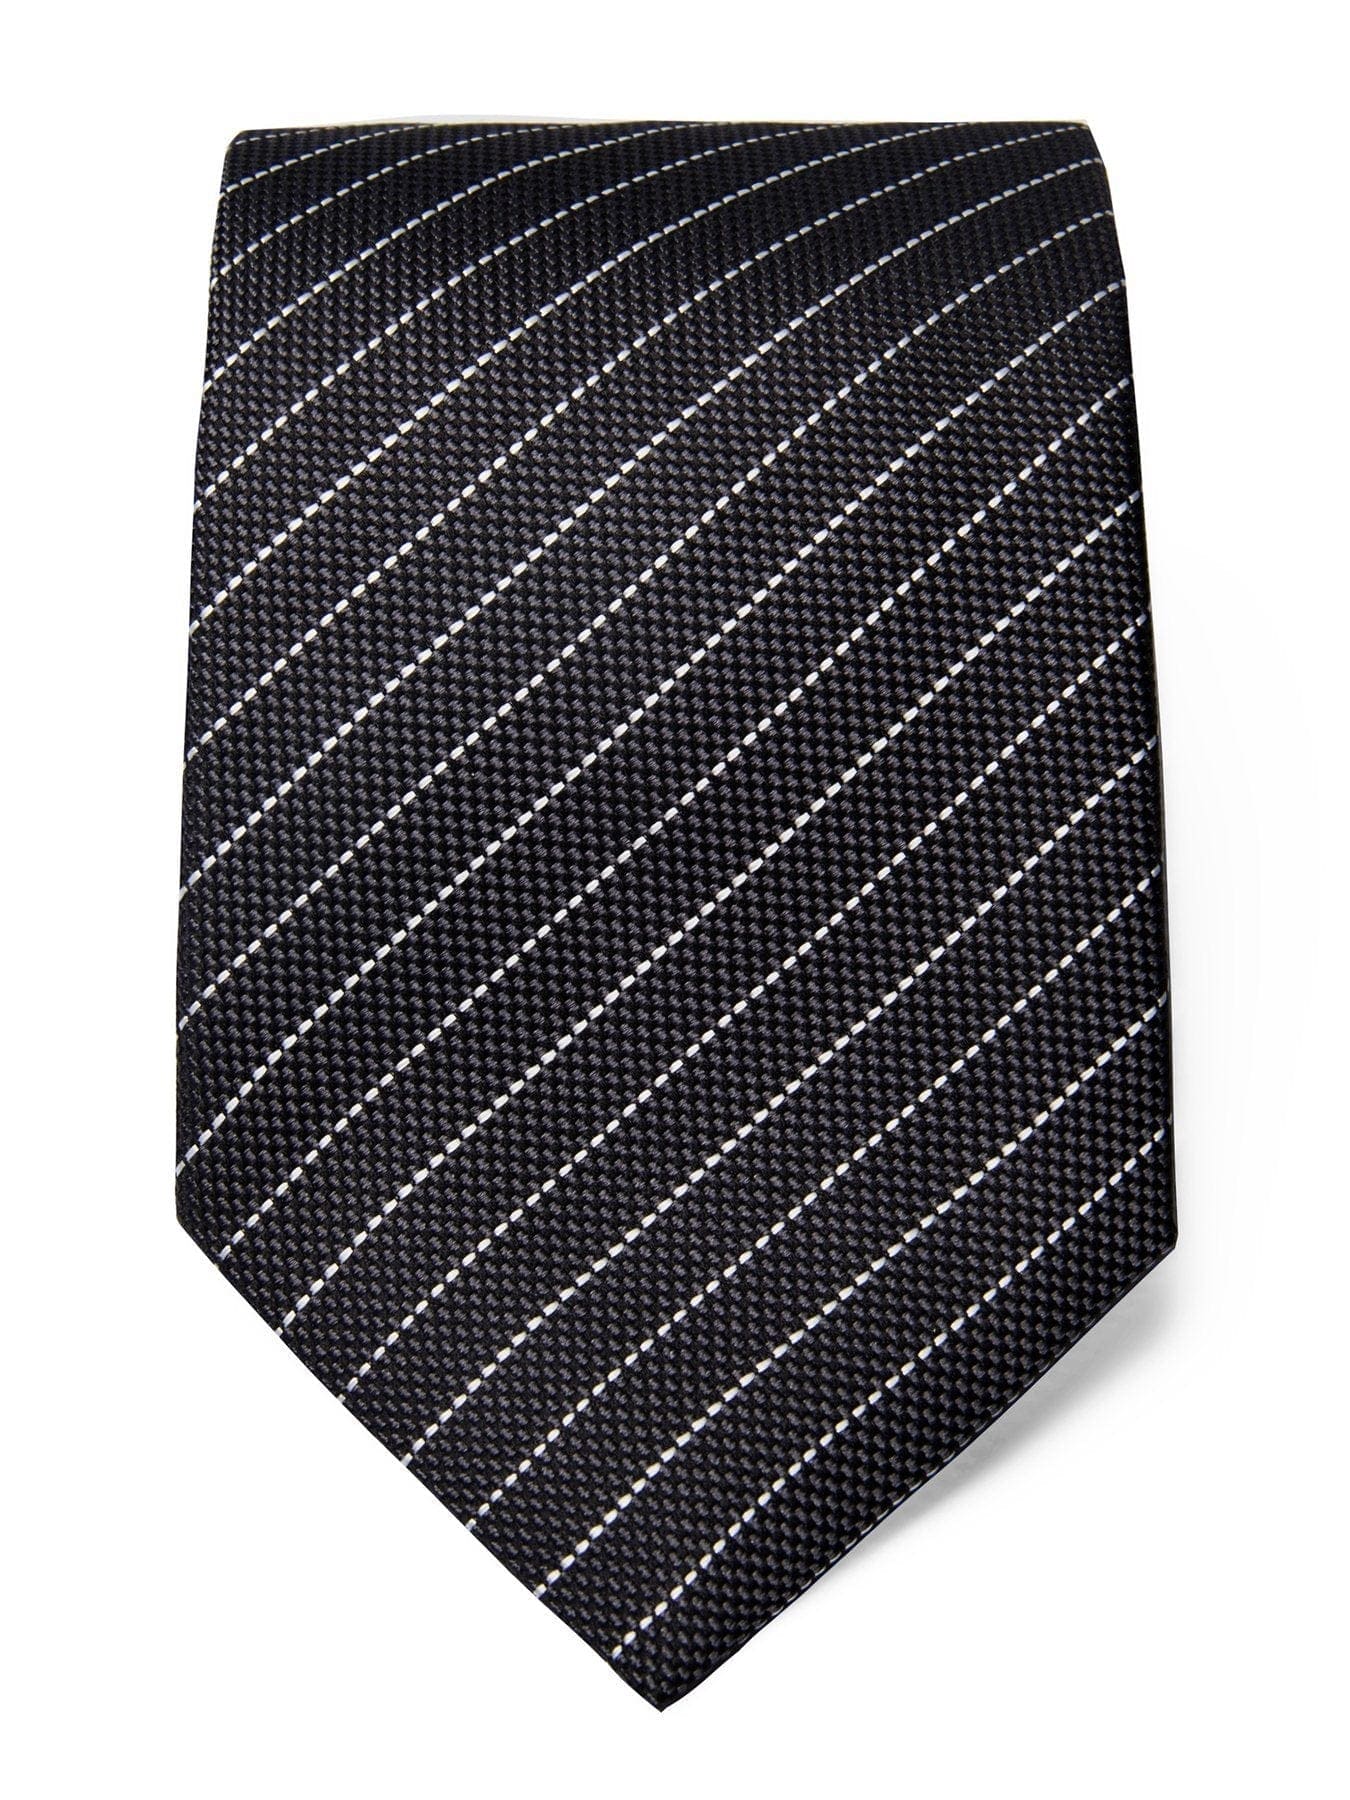 Grey Silk Tie with White Stripes